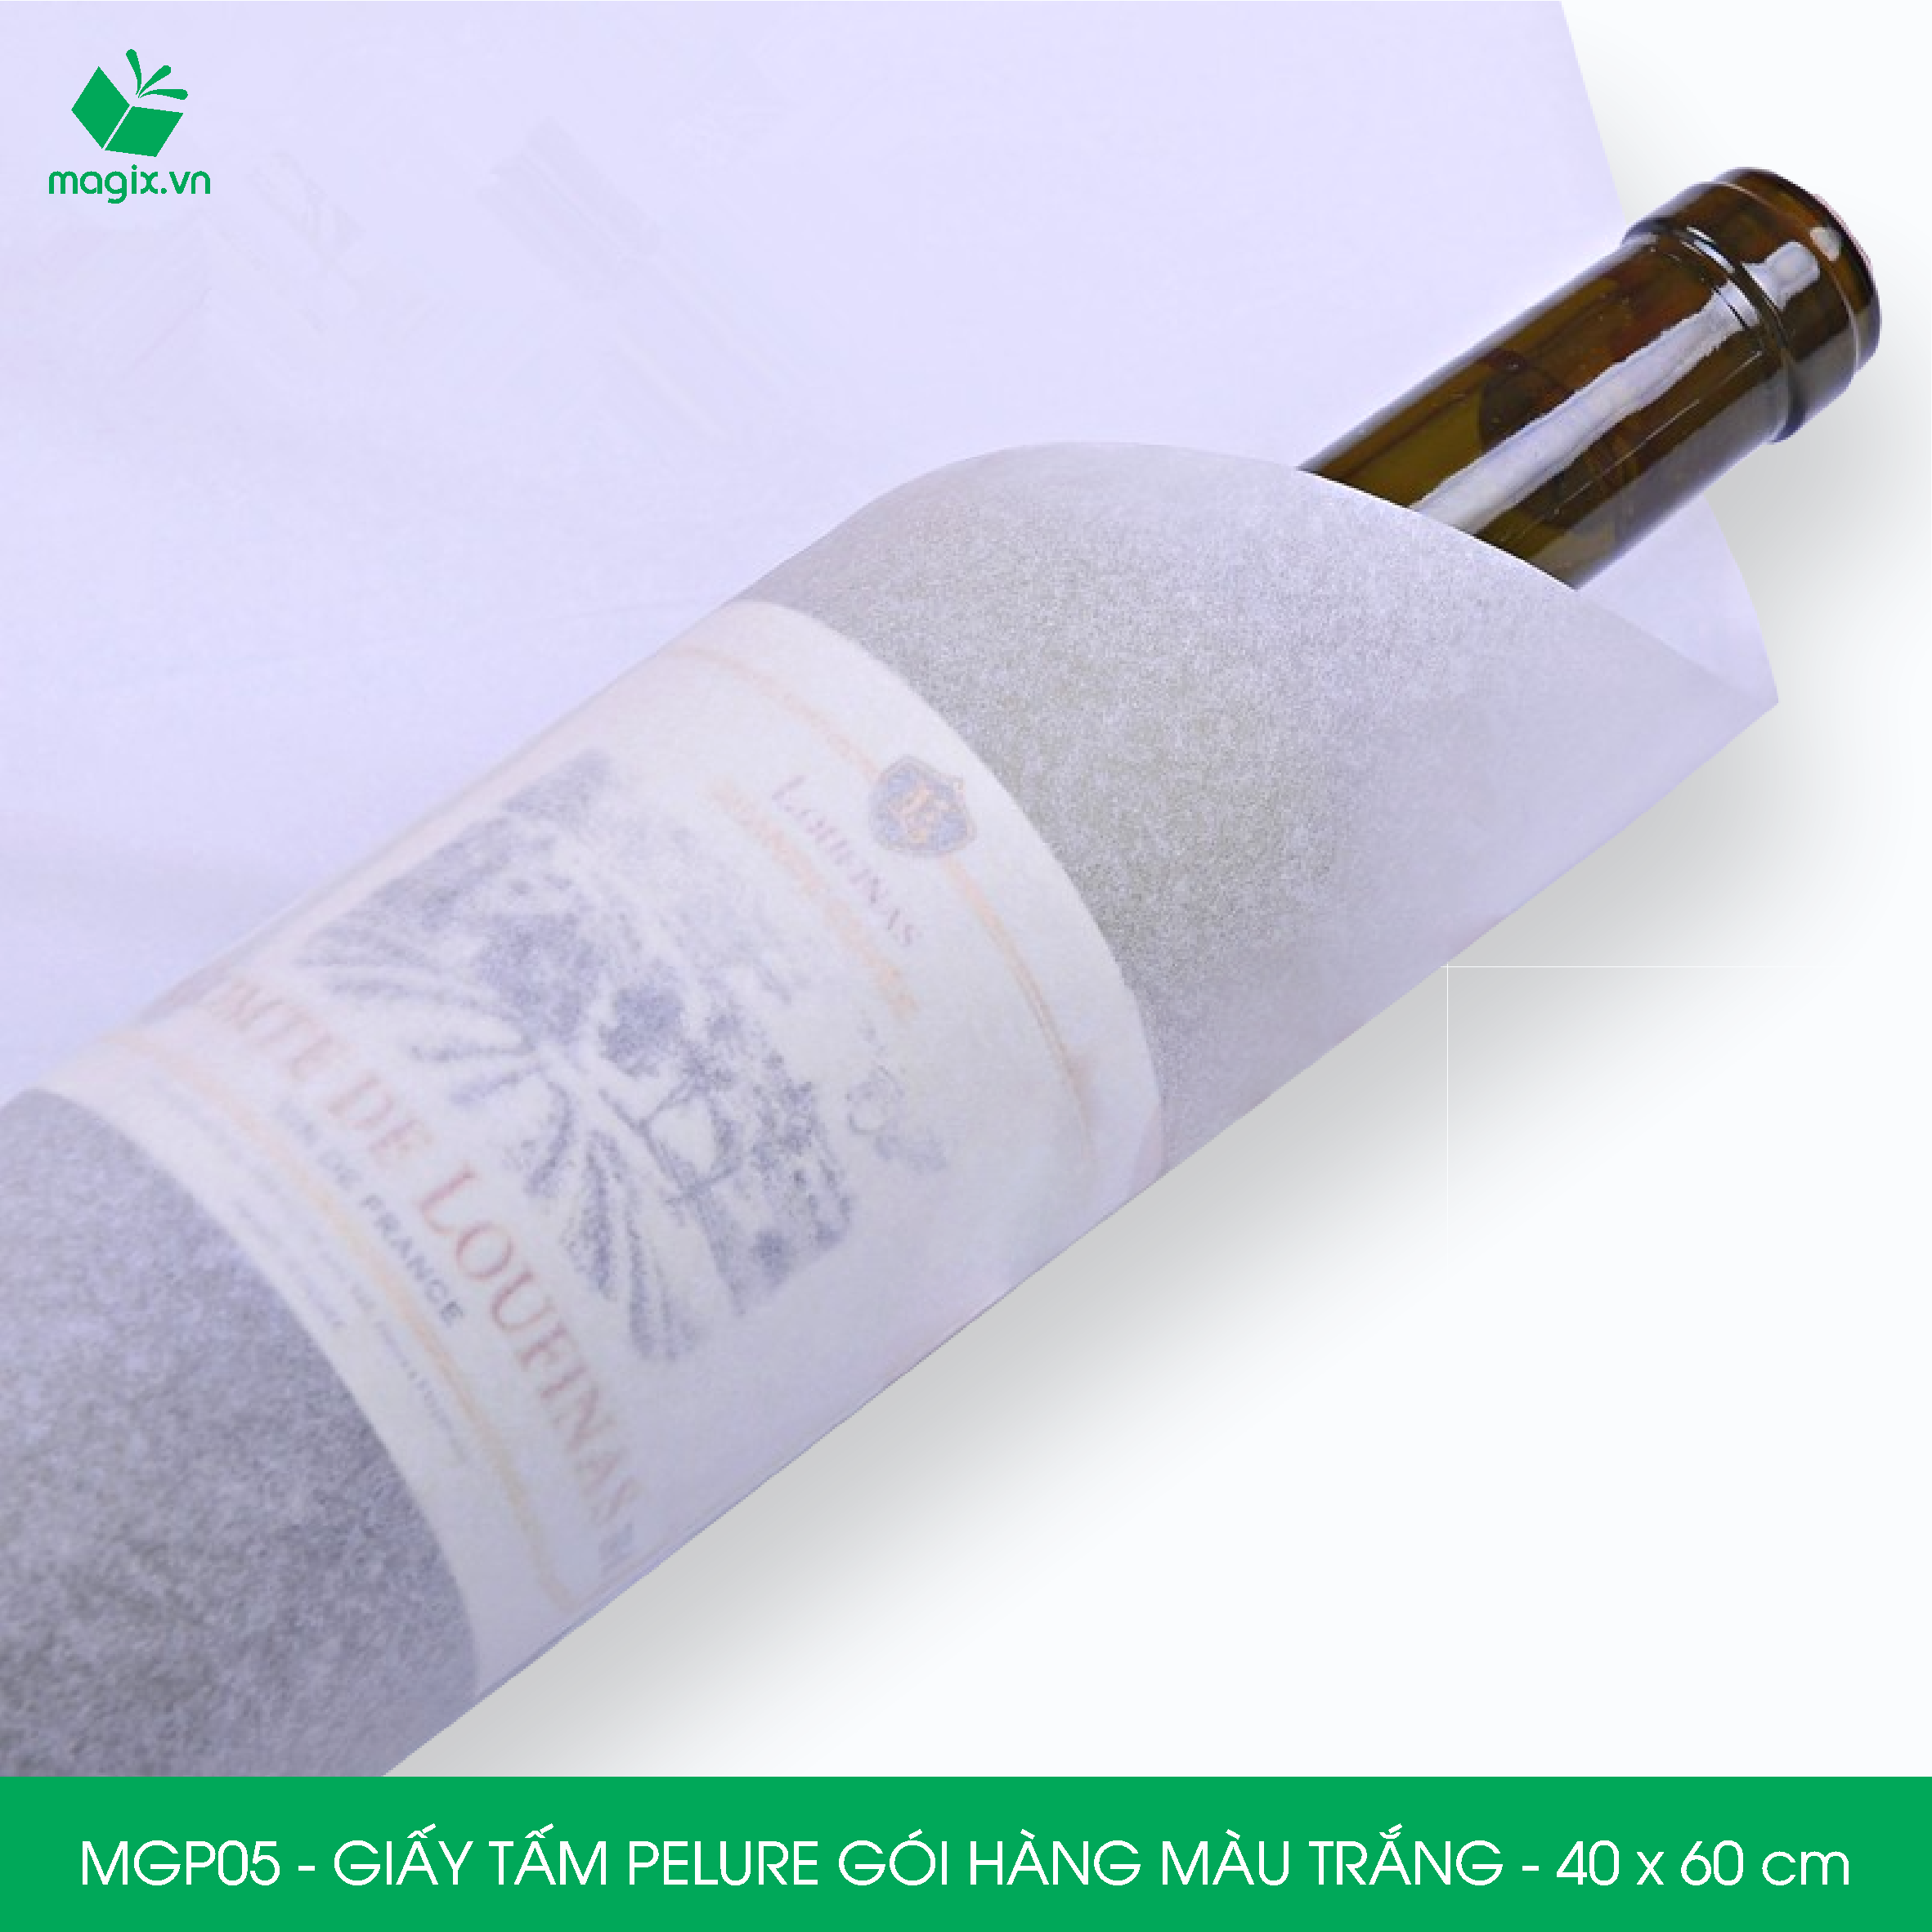 MGP05 - 40x60 cm - 1000 tấm giấy Pelure trắng gói hàng, giấy chống ẩm 2 mặt mịn, giấy bọc hàng thời trang